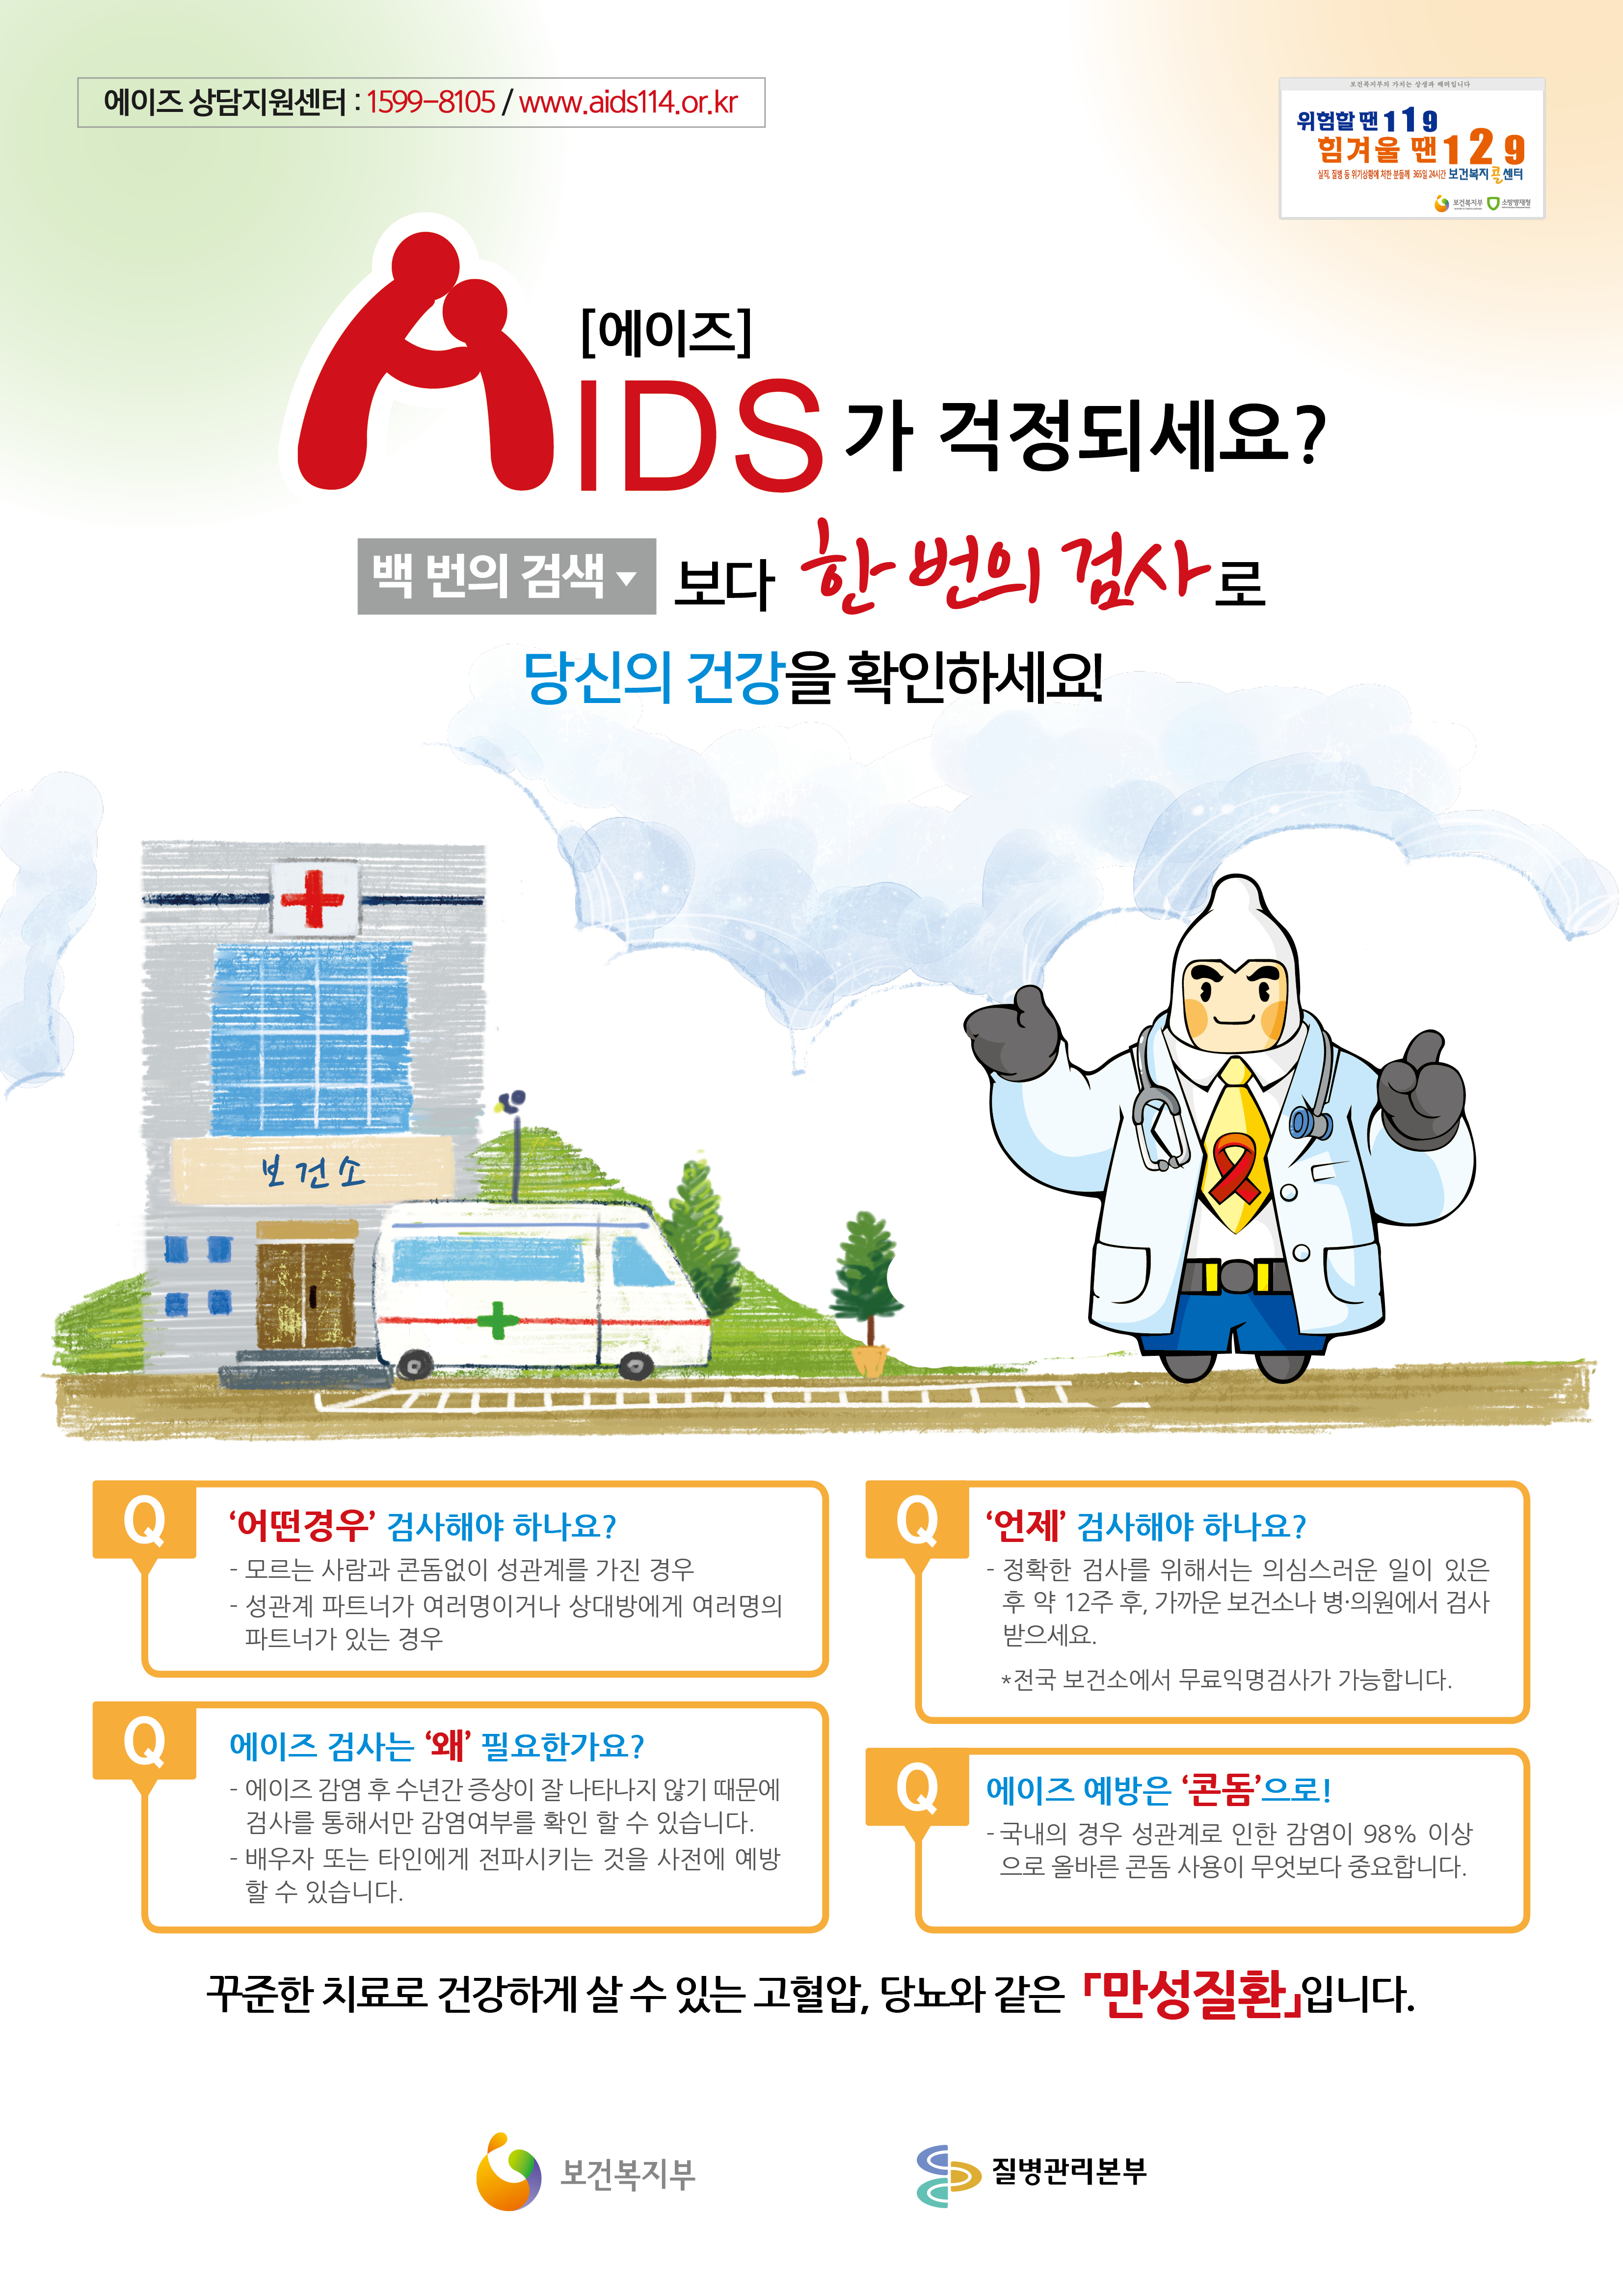 2014년 에이즈 검사 포스터